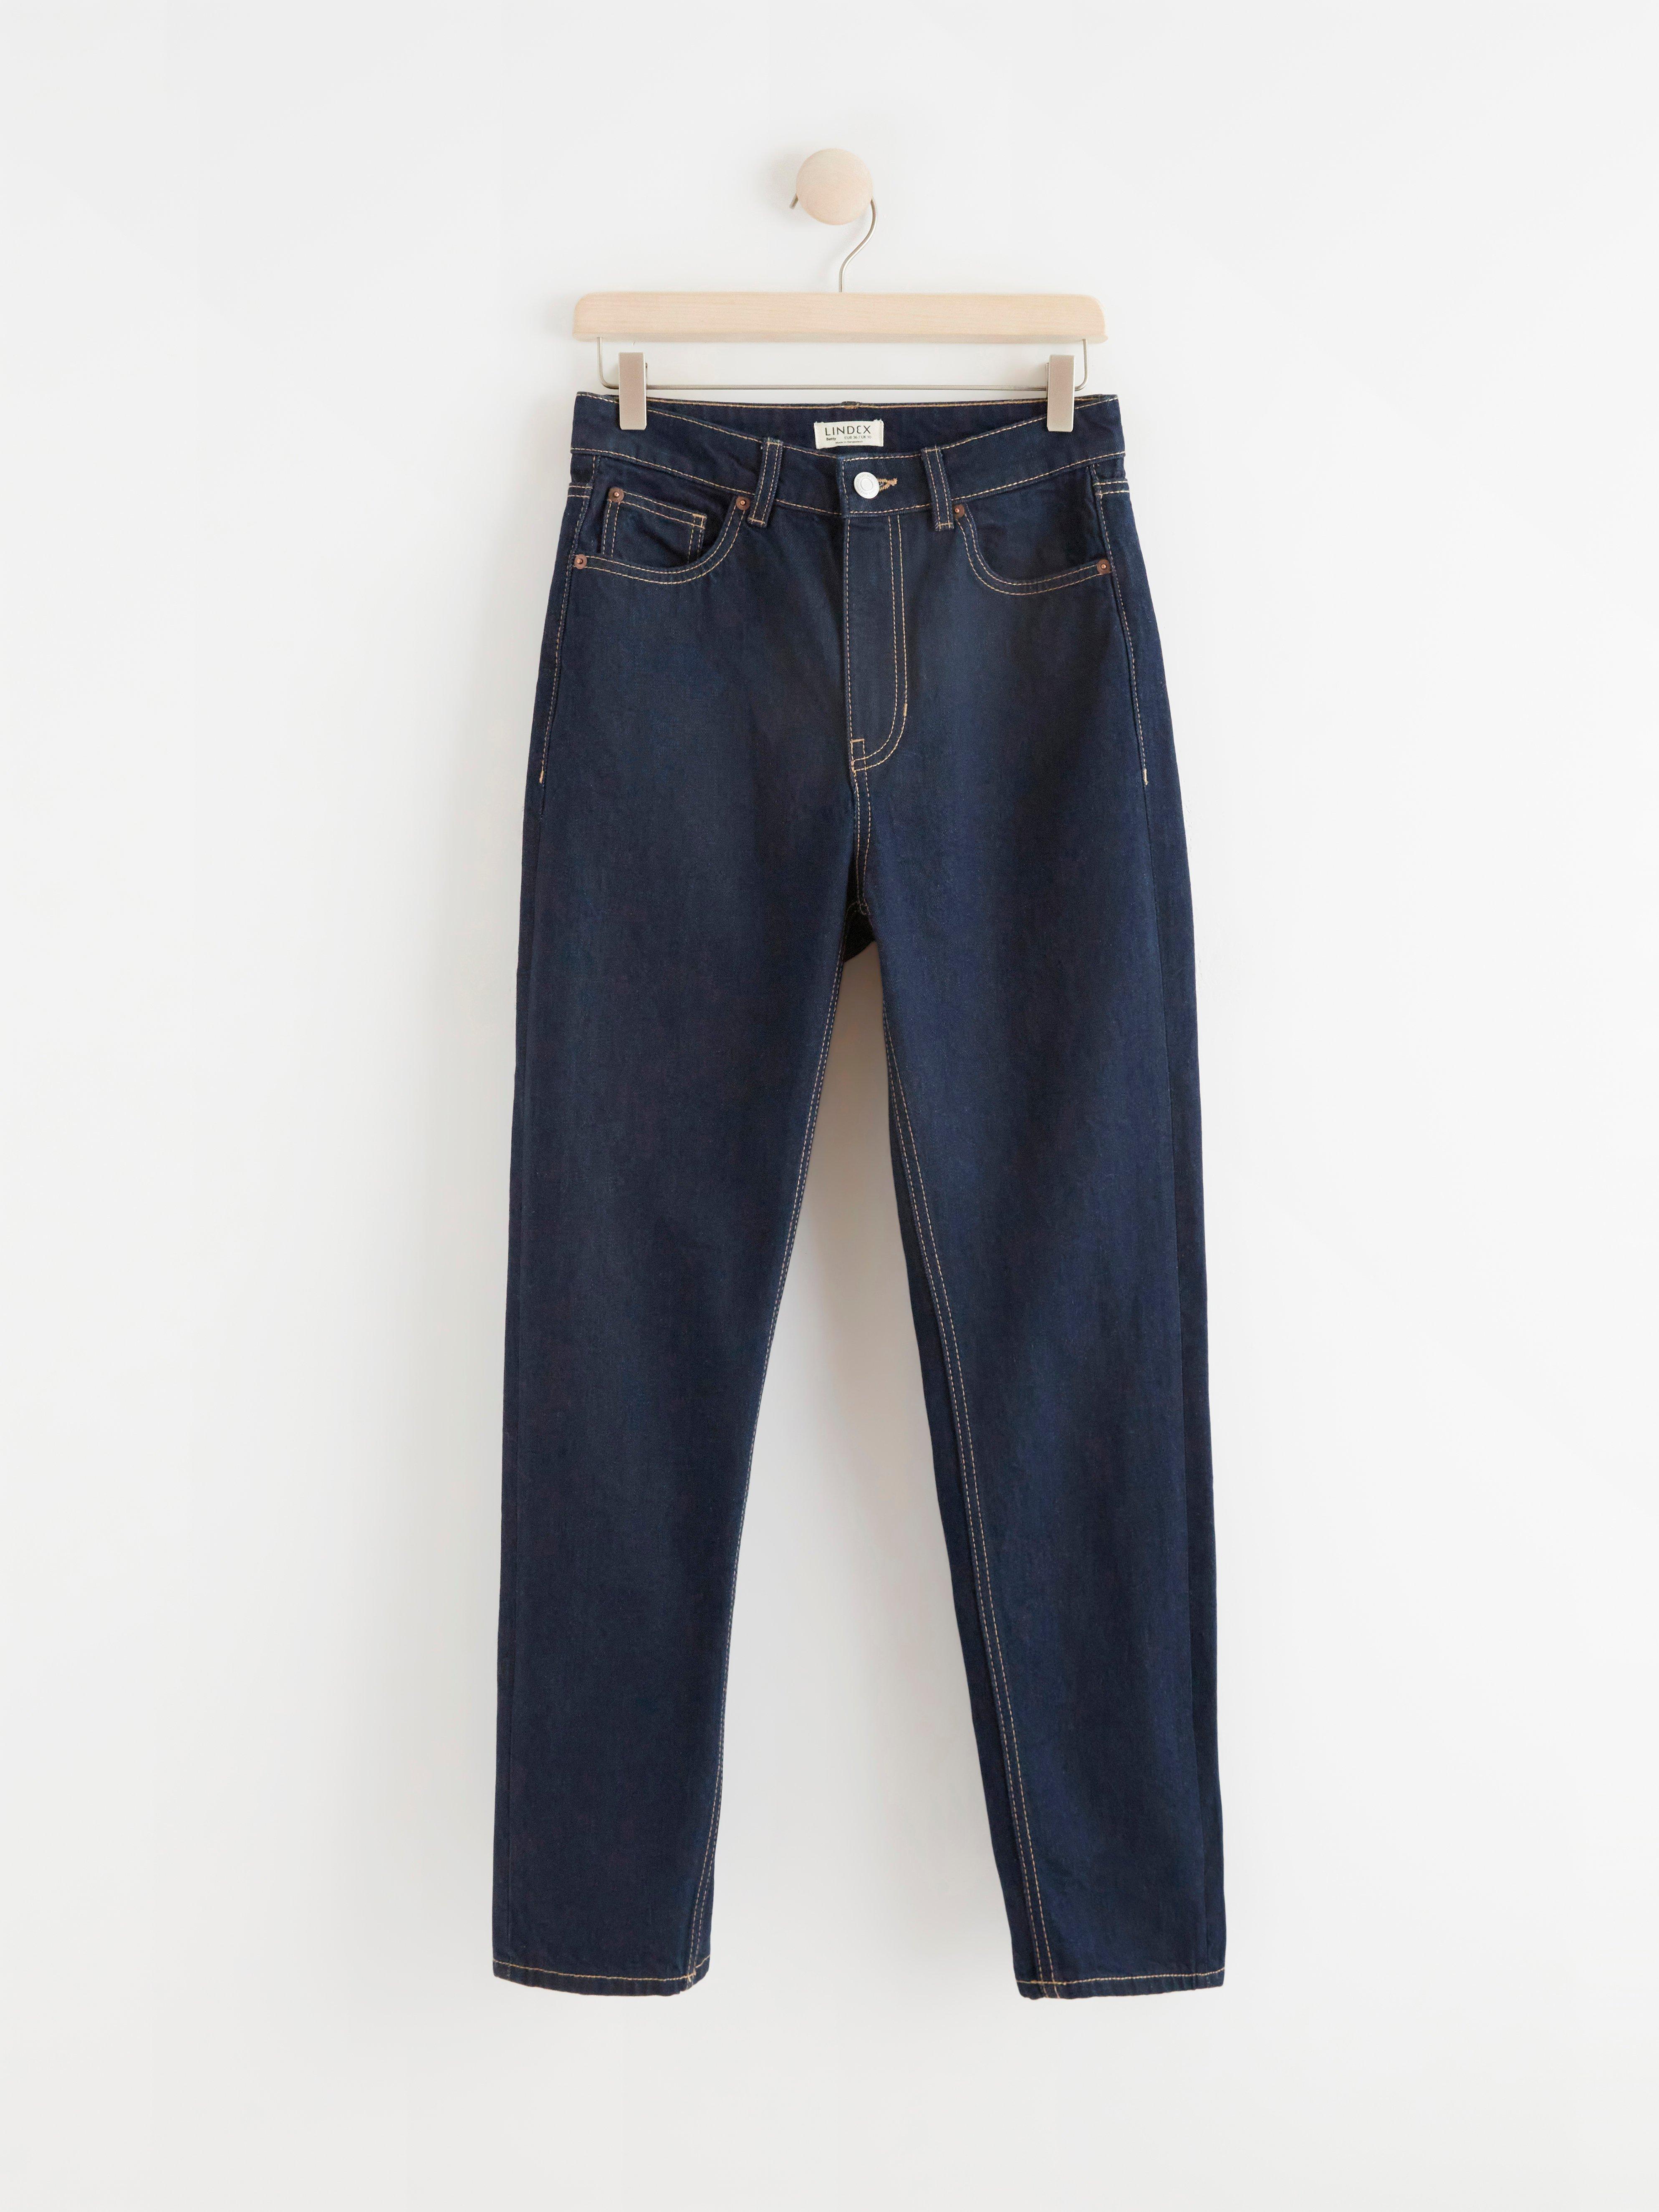 Jeans Ri 19 dama - tiendaonlinepy - ID 857189